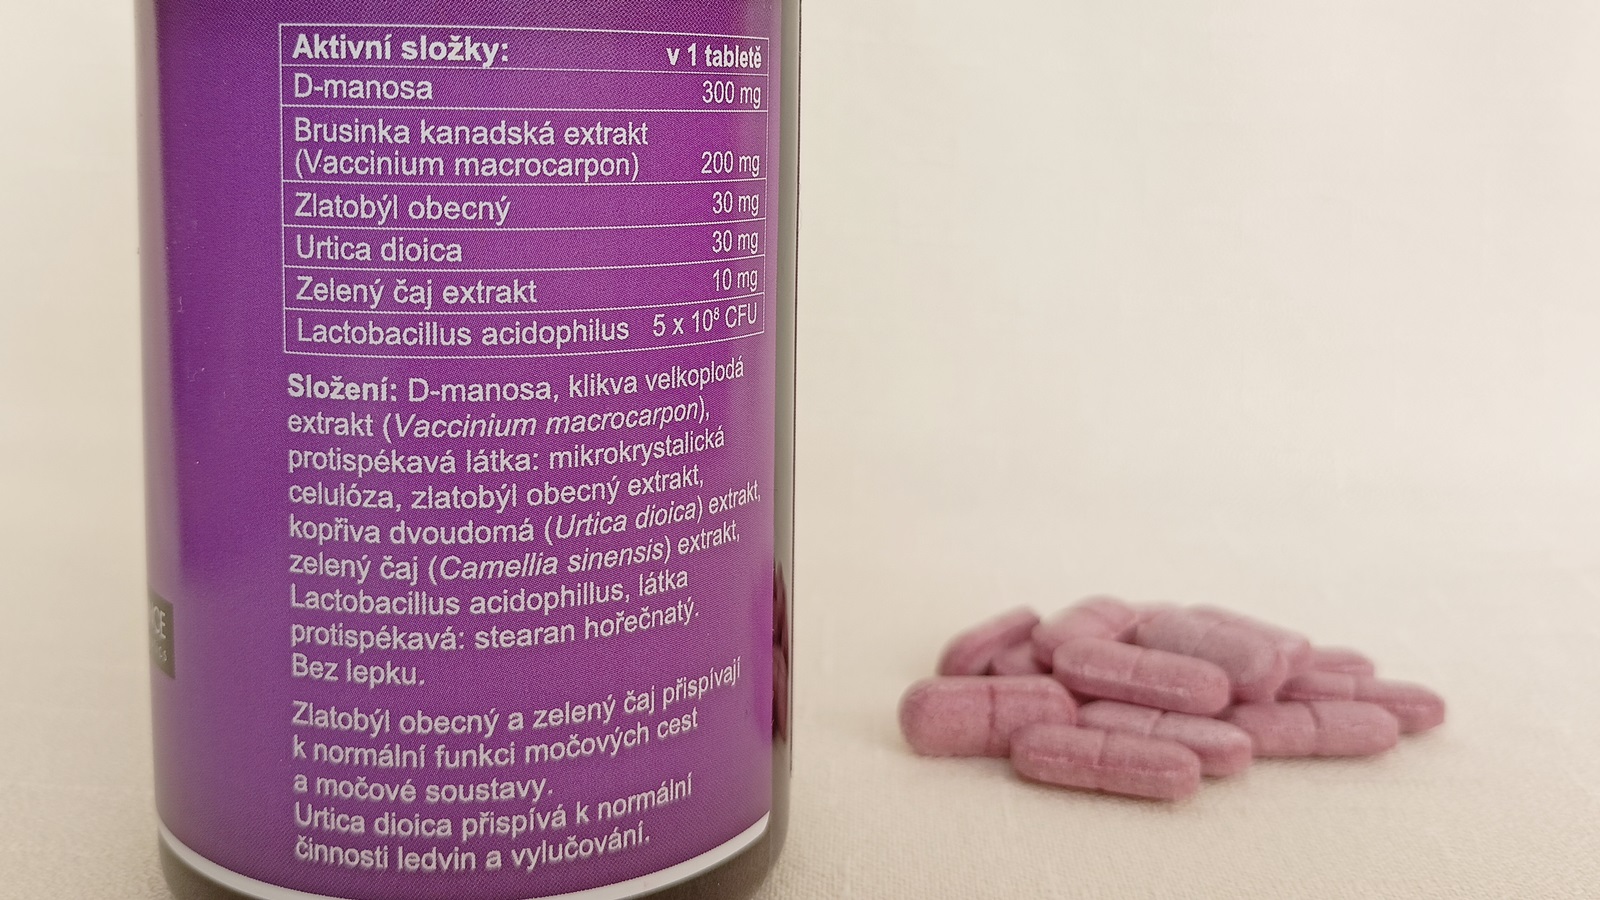 Recenze: Přípravek Urixin proti zánětům močových cest od ADVANCE nutraceutics